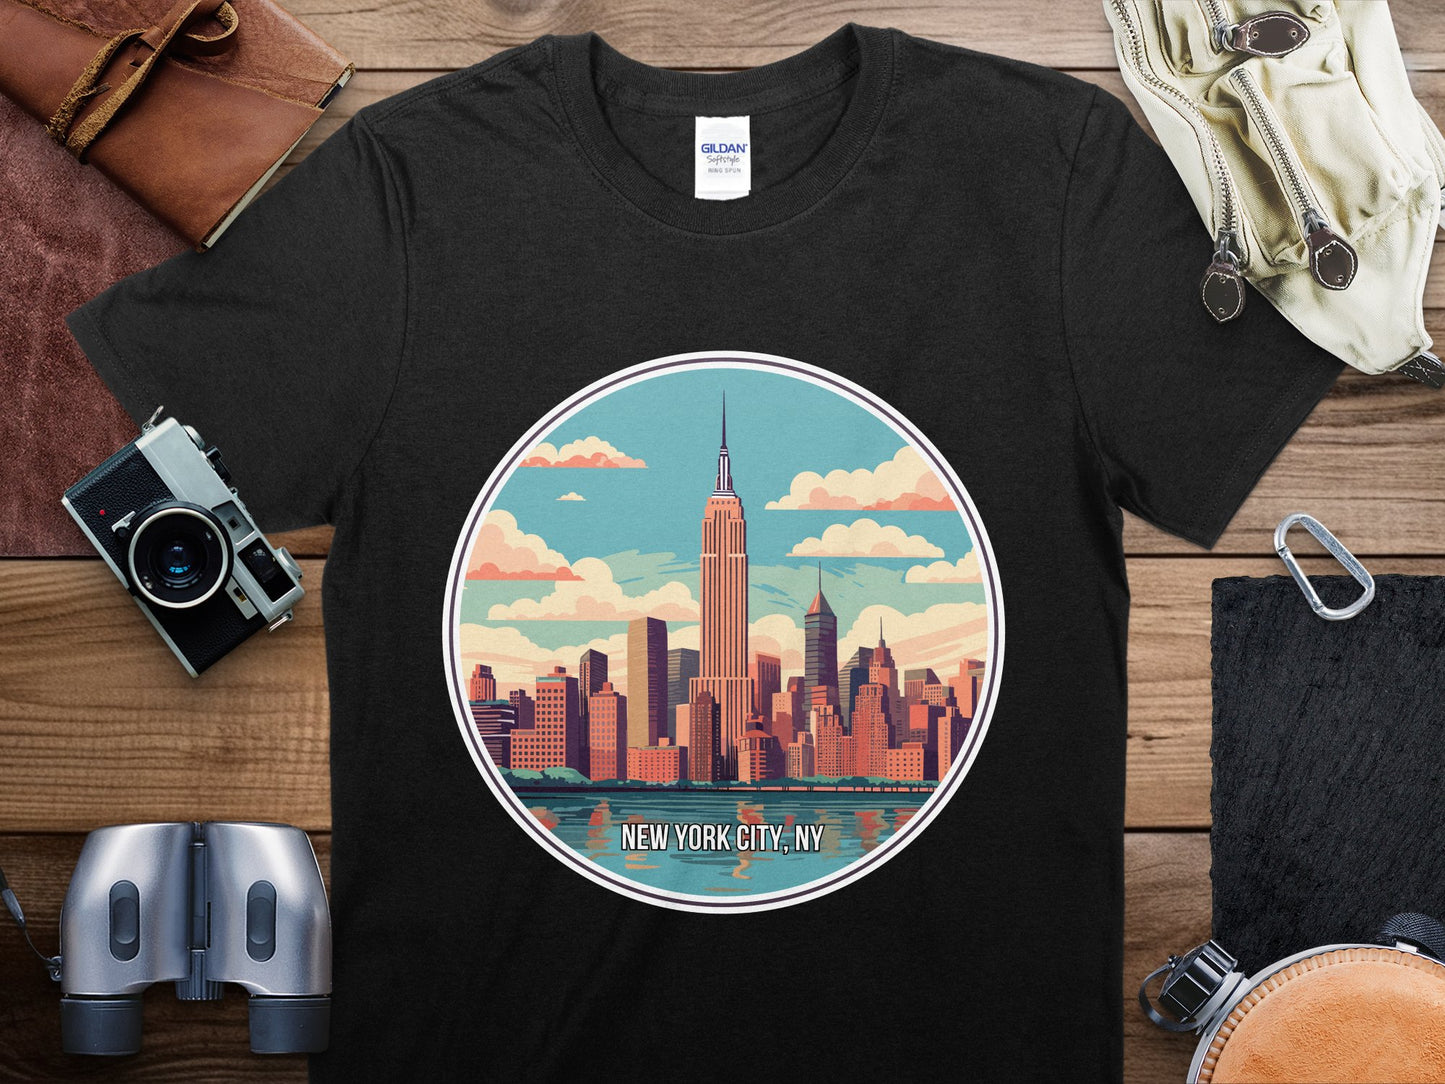 New York City 2 Travel T-Shirt, New York City 2 NYC Shirt